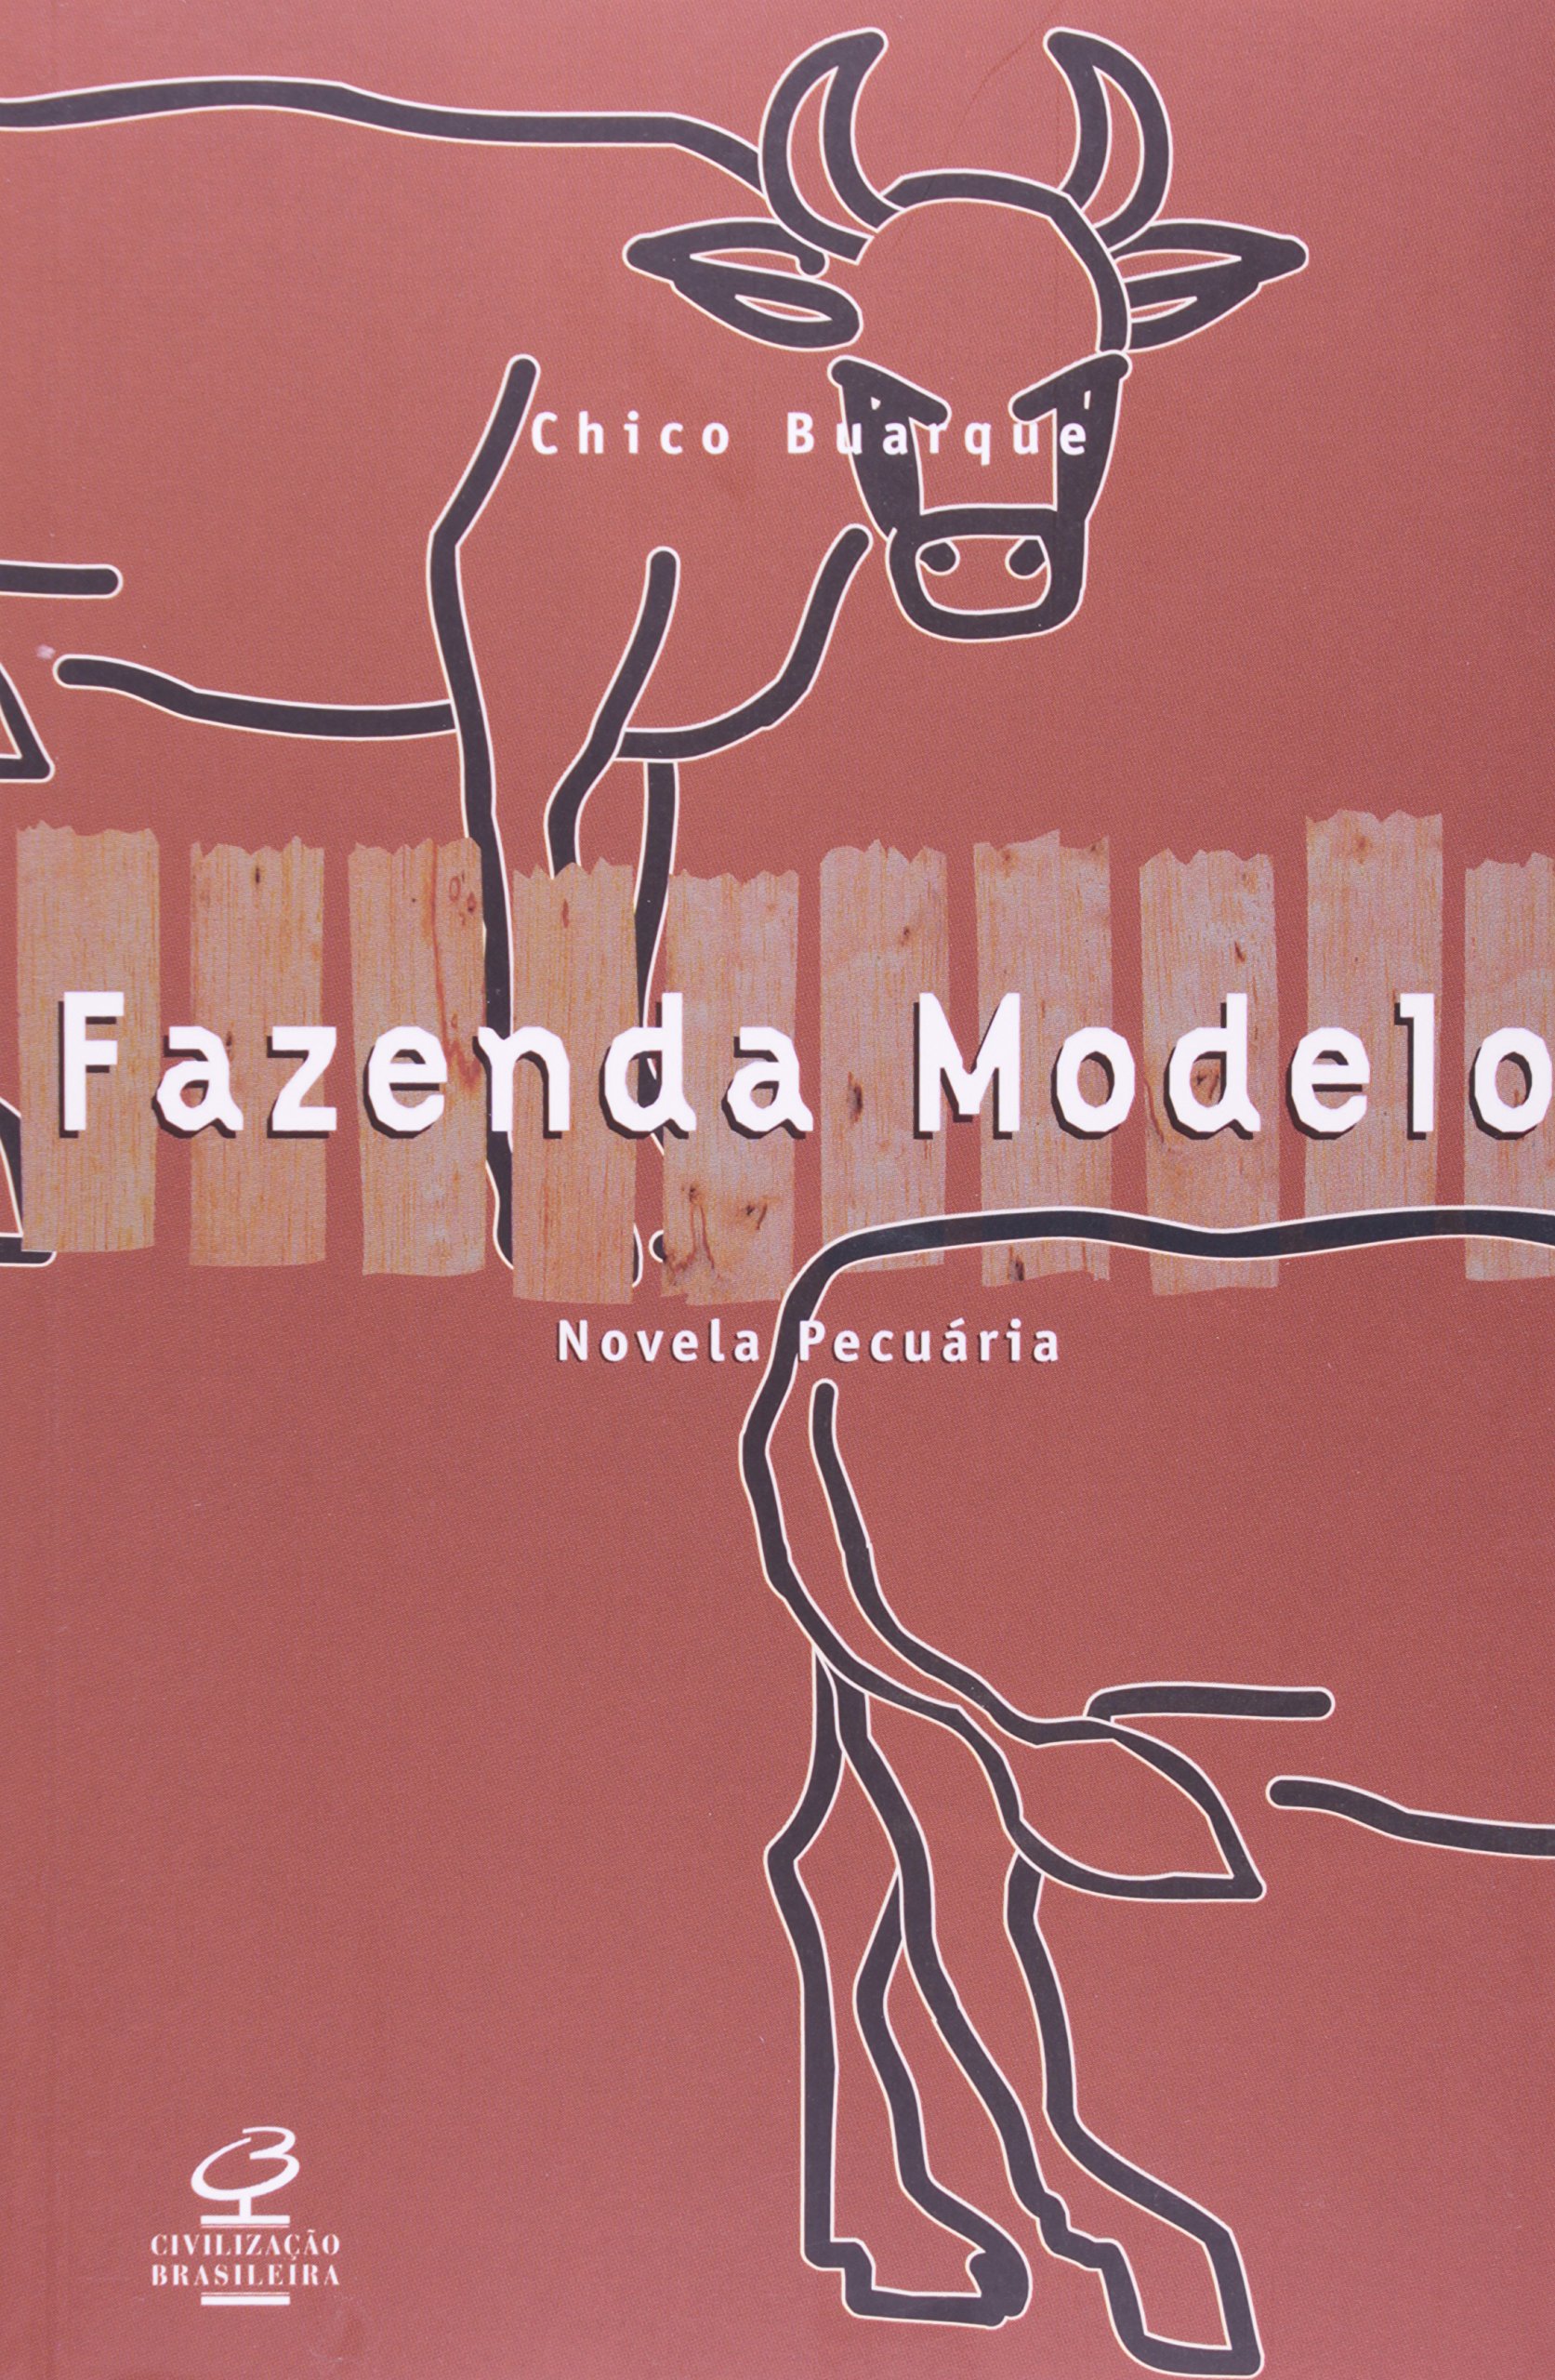 Chico Buarque: Fazenda Modelo (Portuguese language, 1974, Civilização Brasileira)